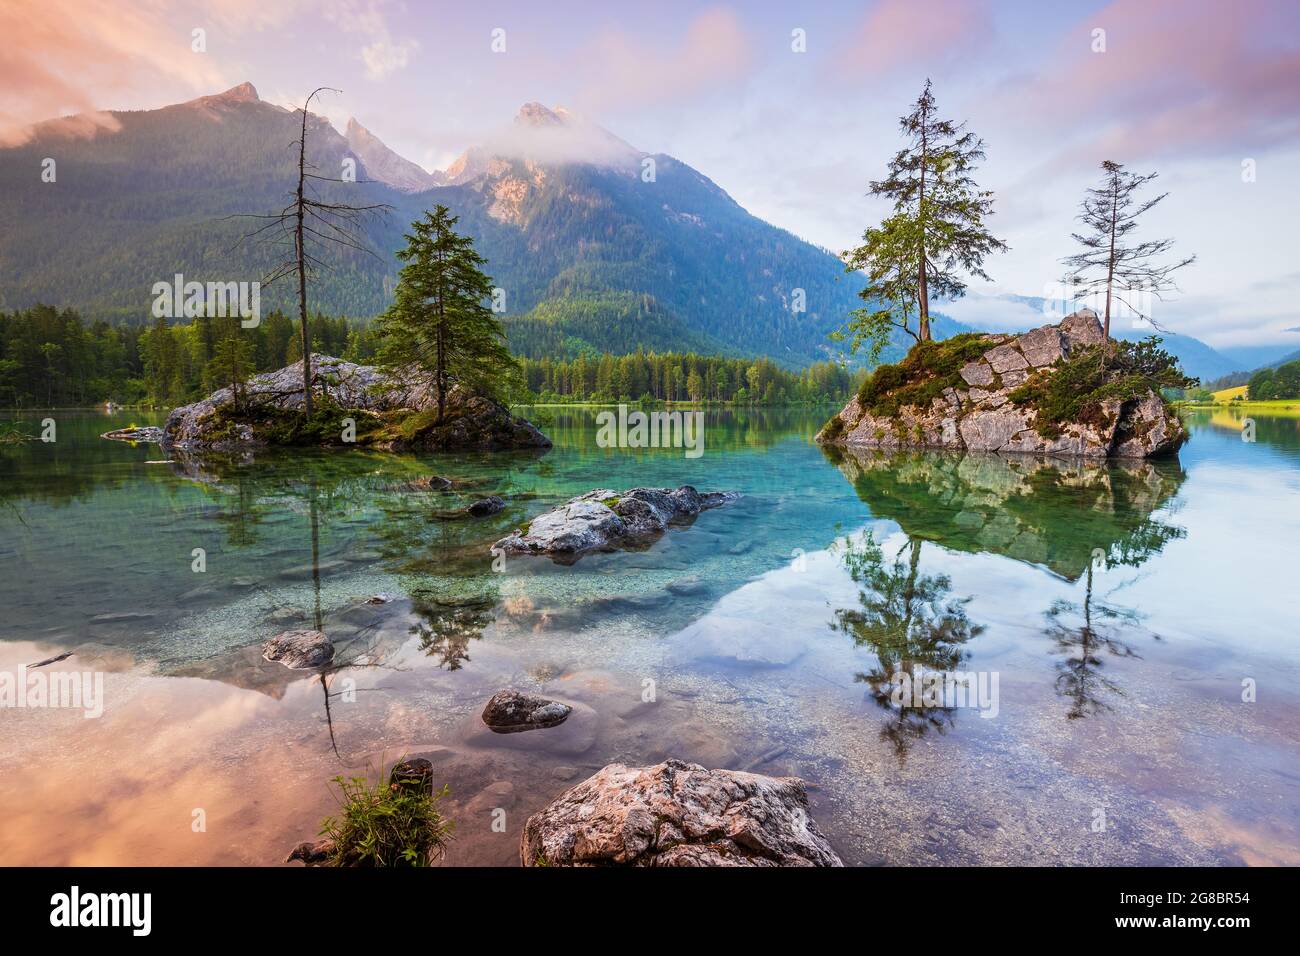 Parc national de Berchtesgaden, Allemagne. Le lac Hintersee et les Alpes bavaroises au lever du soleil. Banque D'Images